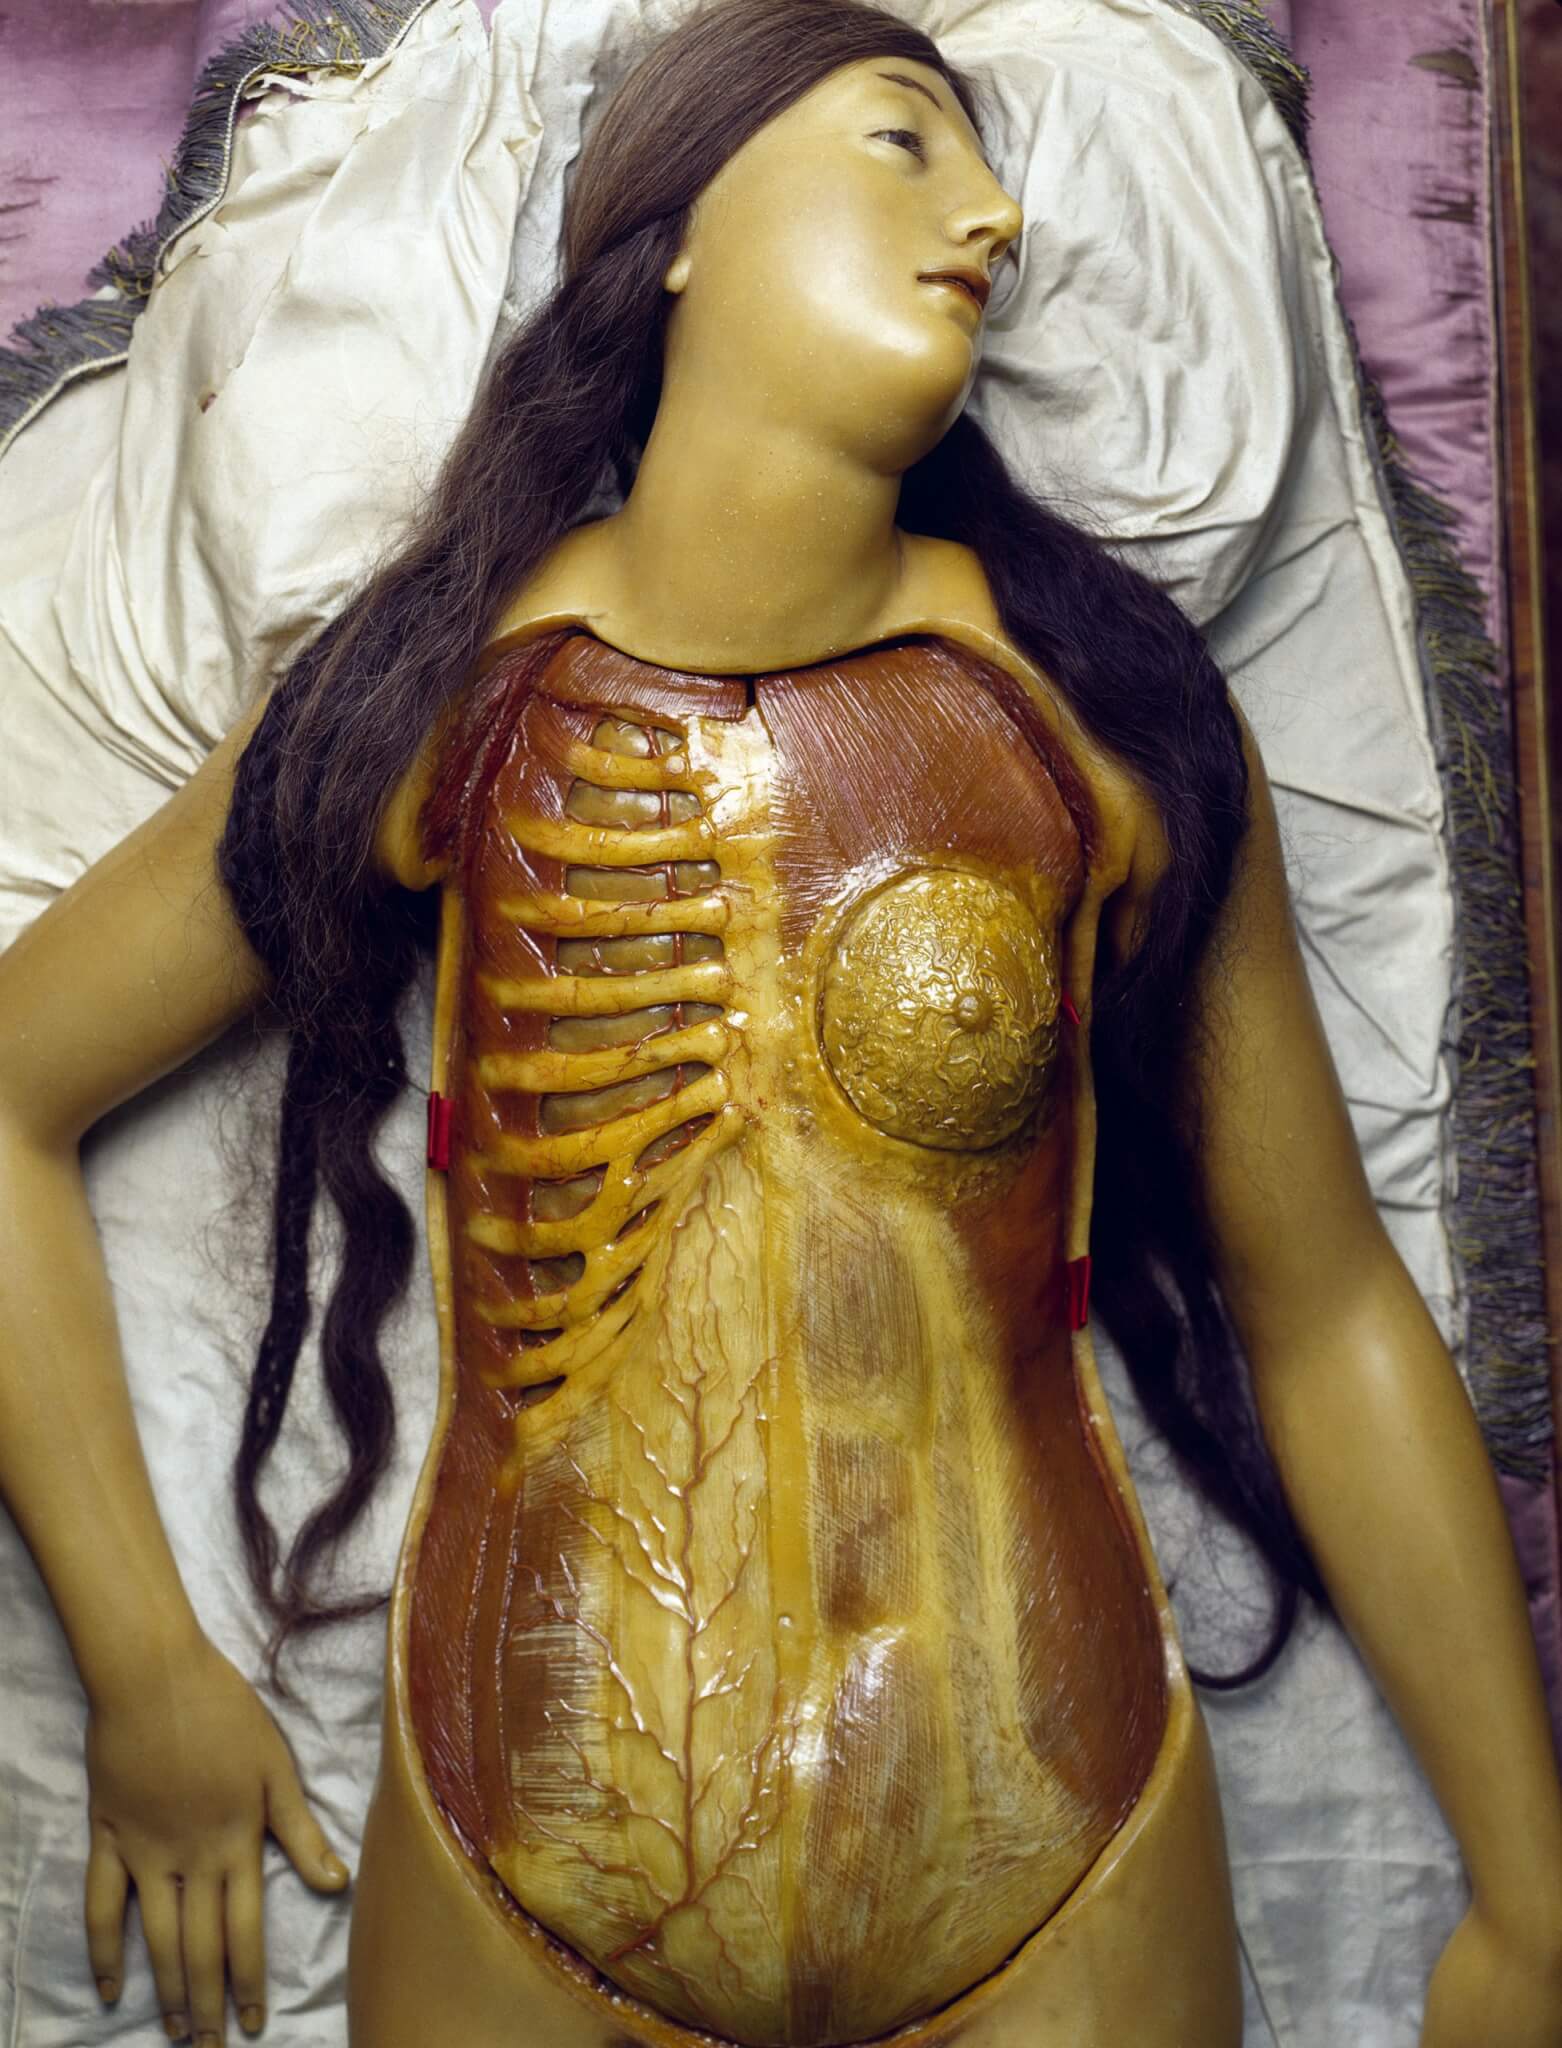 Cere anatomiche - La Specola di Firenze - David Cronenberg